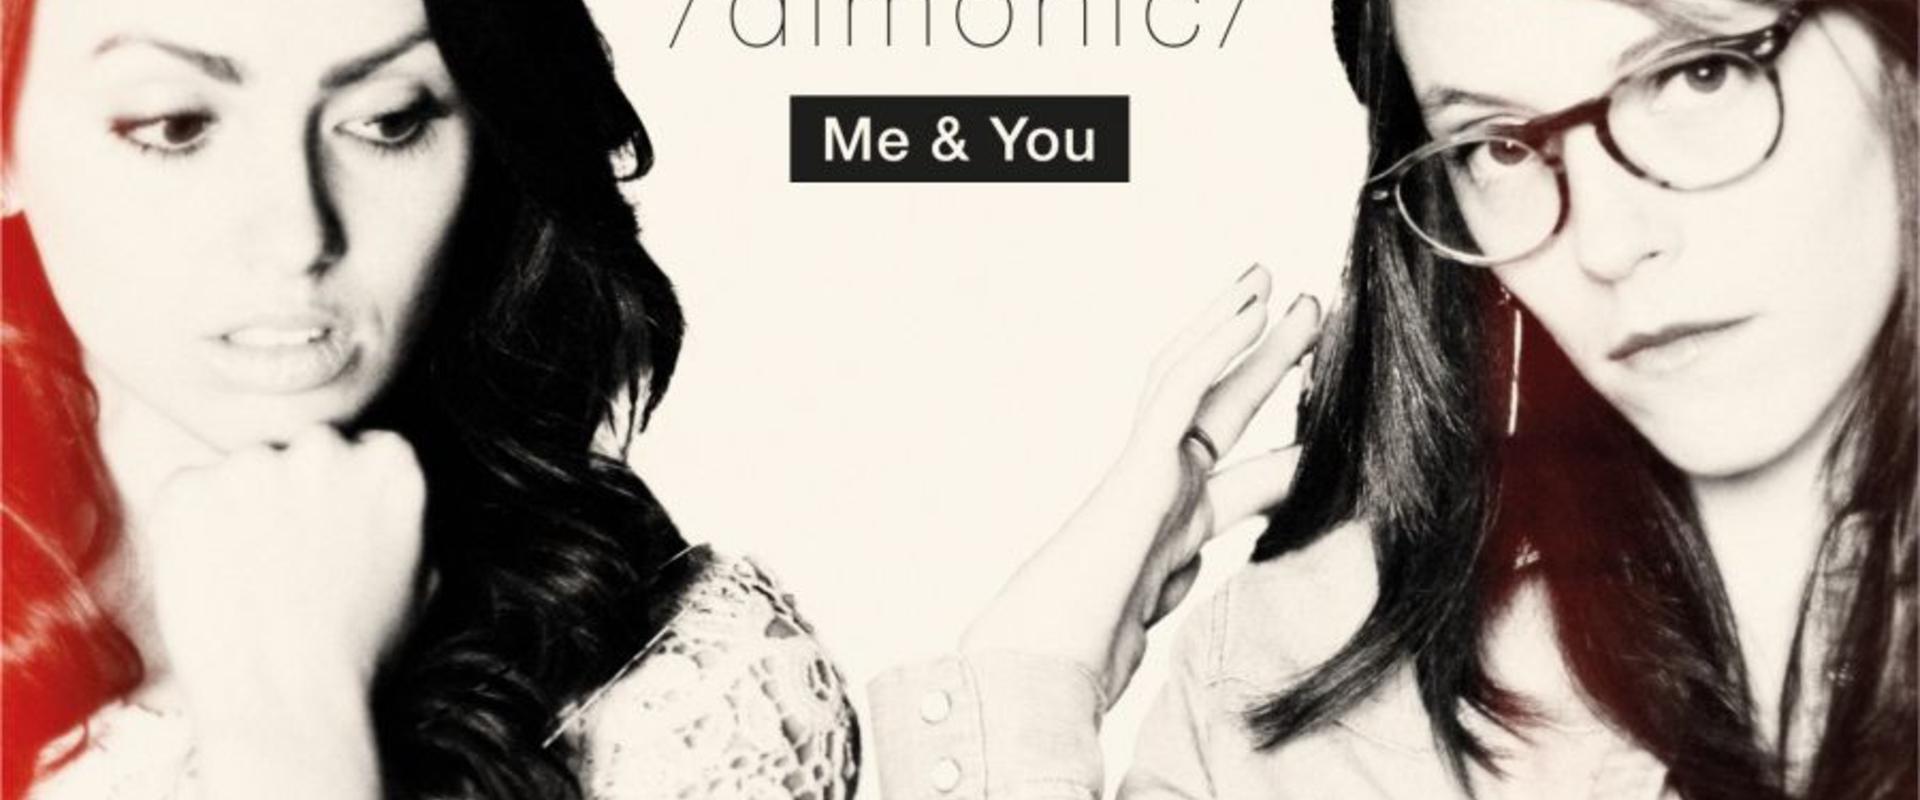 Dimonic - Me & You